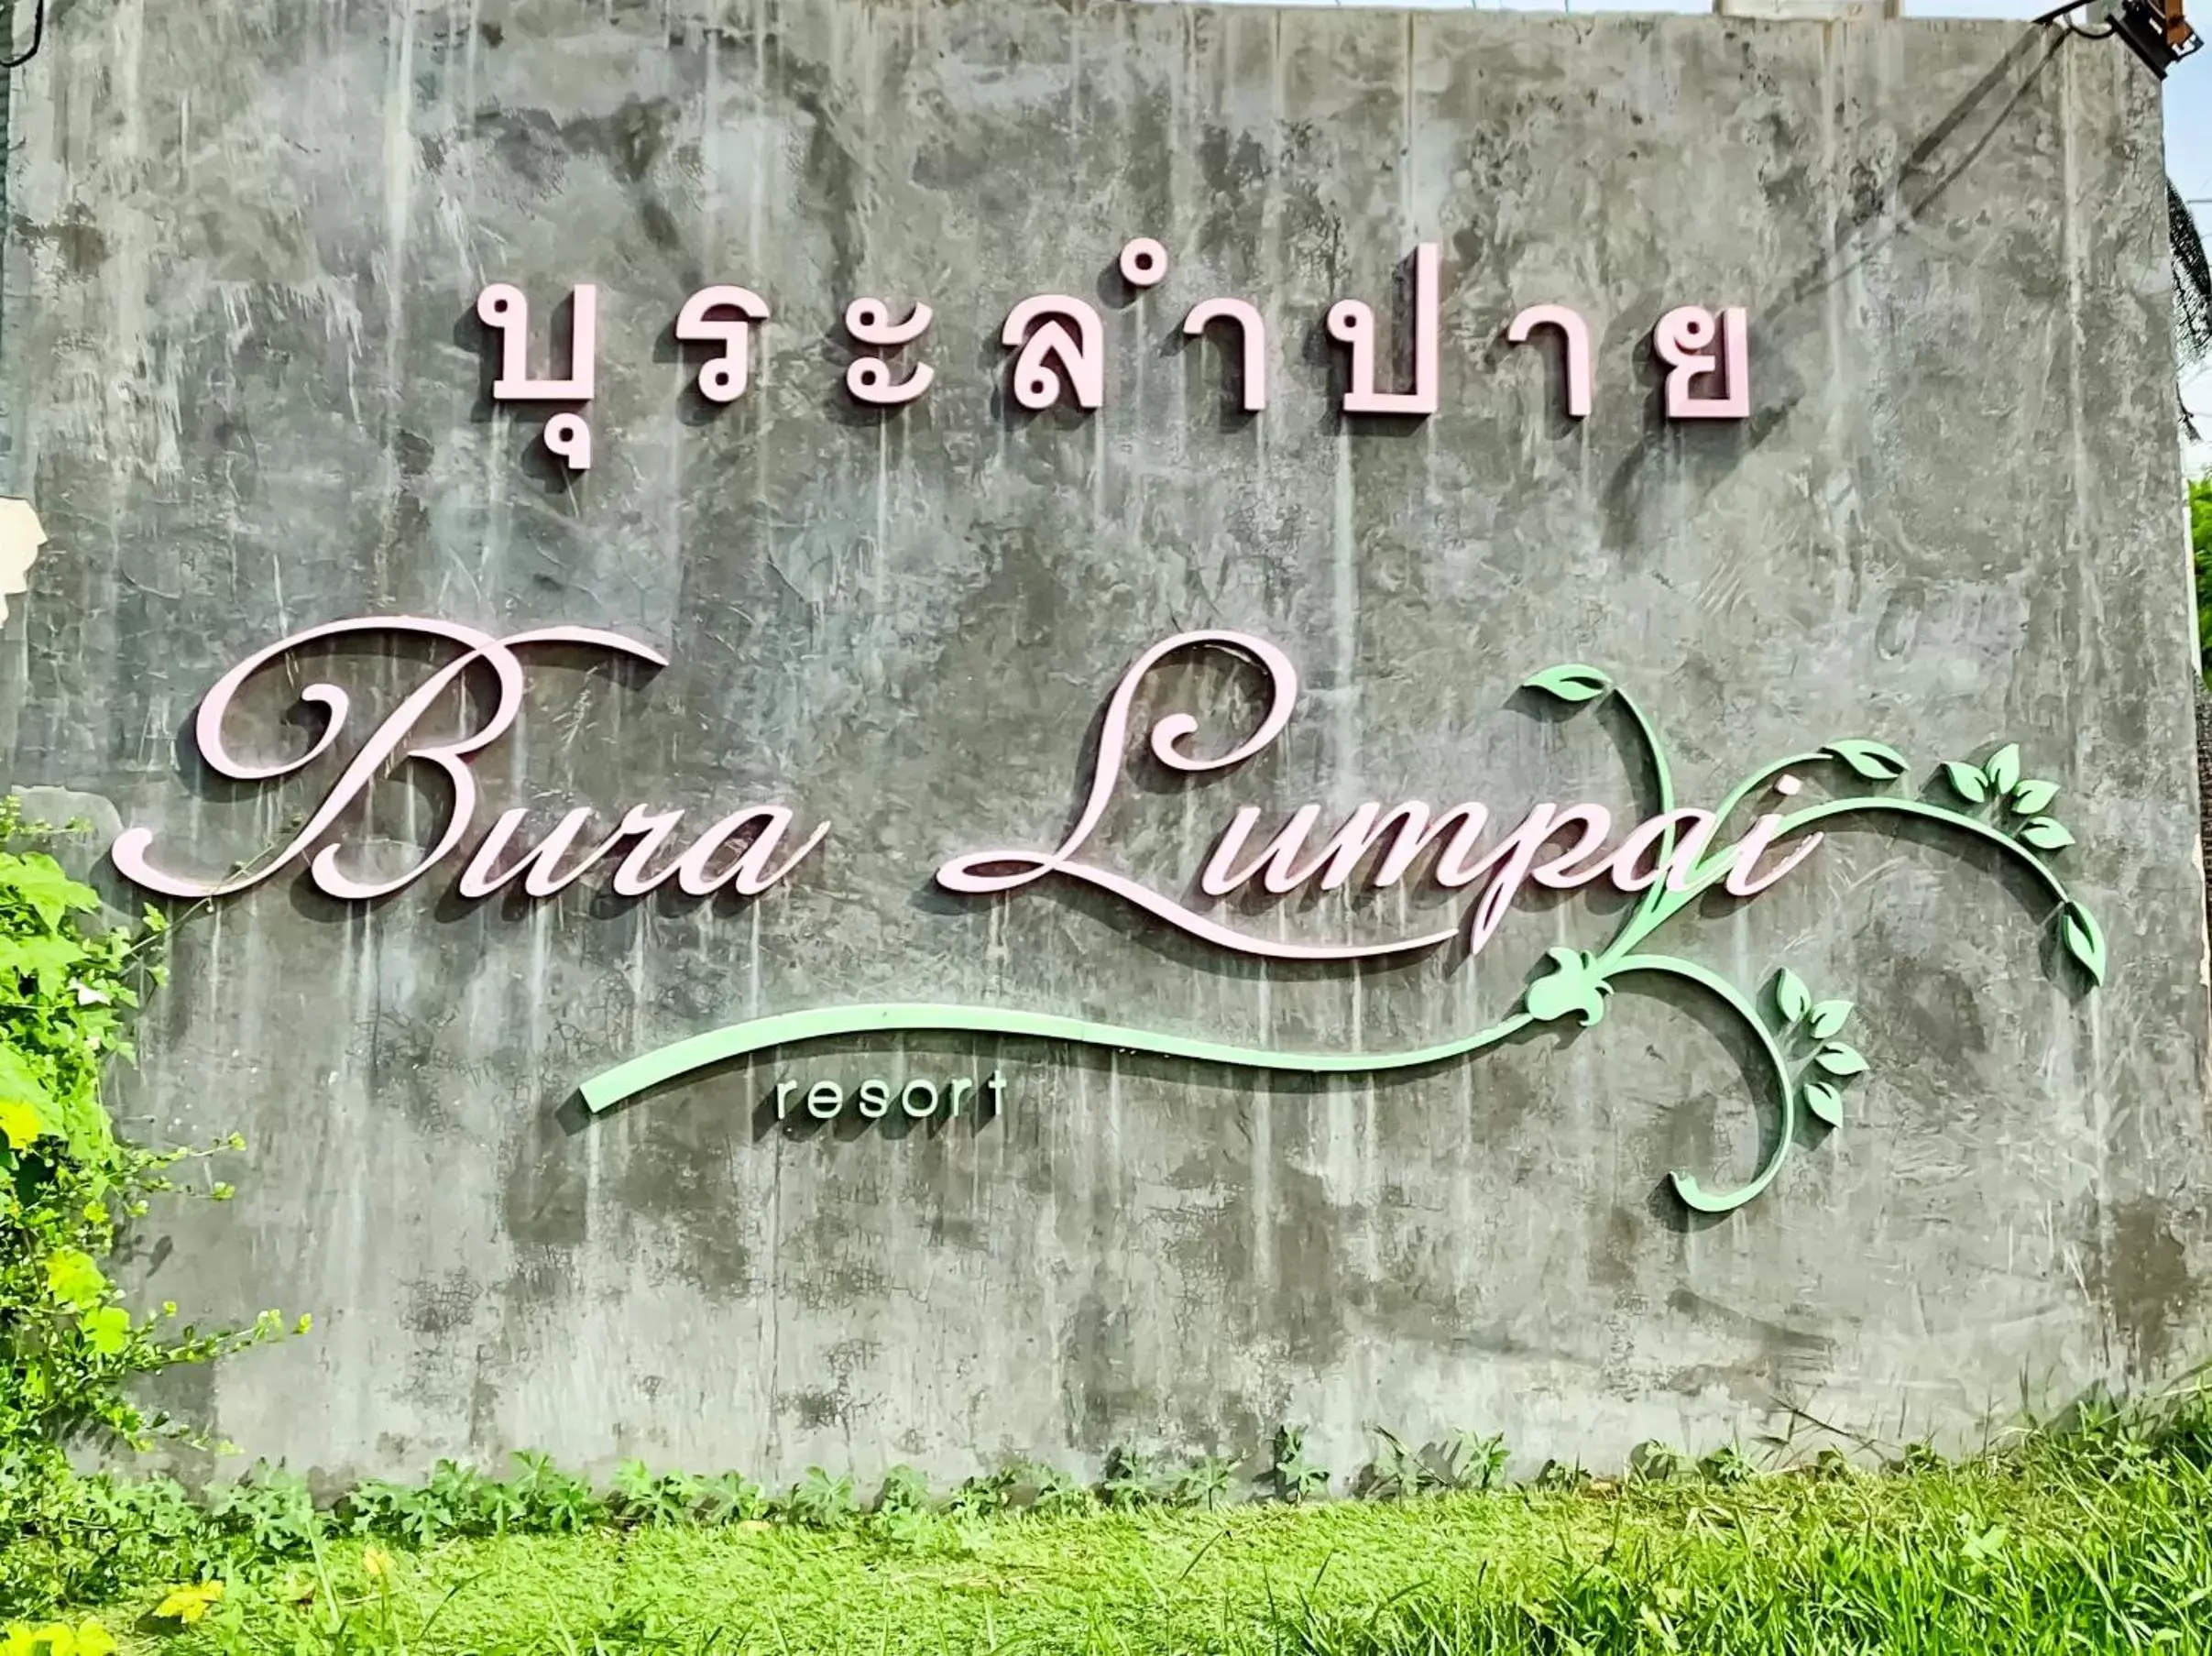 Property logo or sign in Bura Lumpai Resort